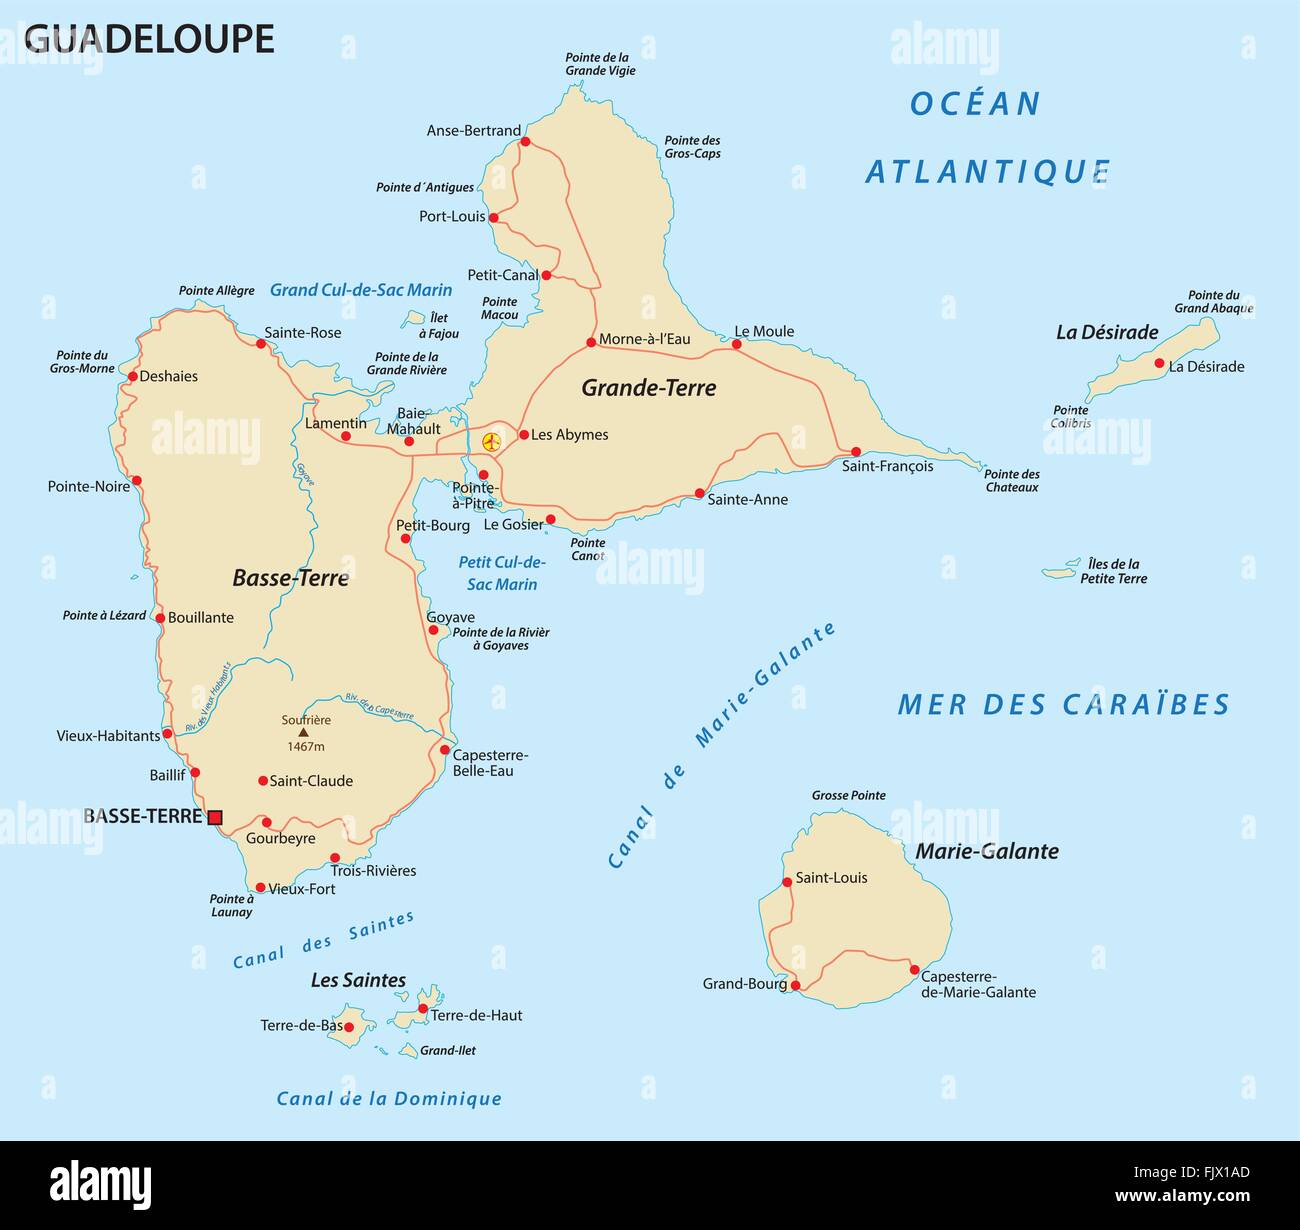 Guadeloupe carte routière Illustration de Vecteur